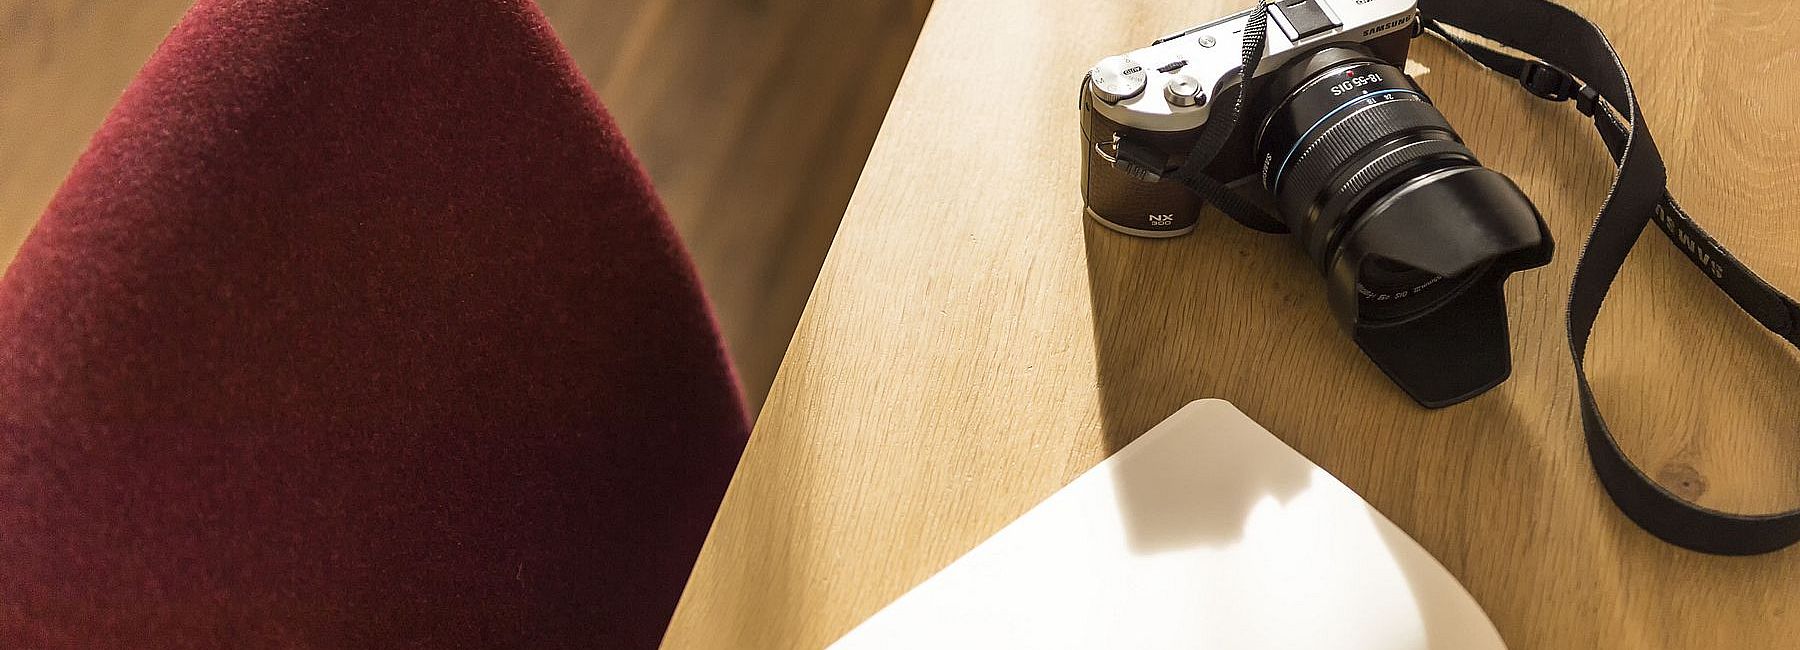 Kamera, Notizblock und Stift auf einem Schreibtisch mit rotem Schreibtischsessel